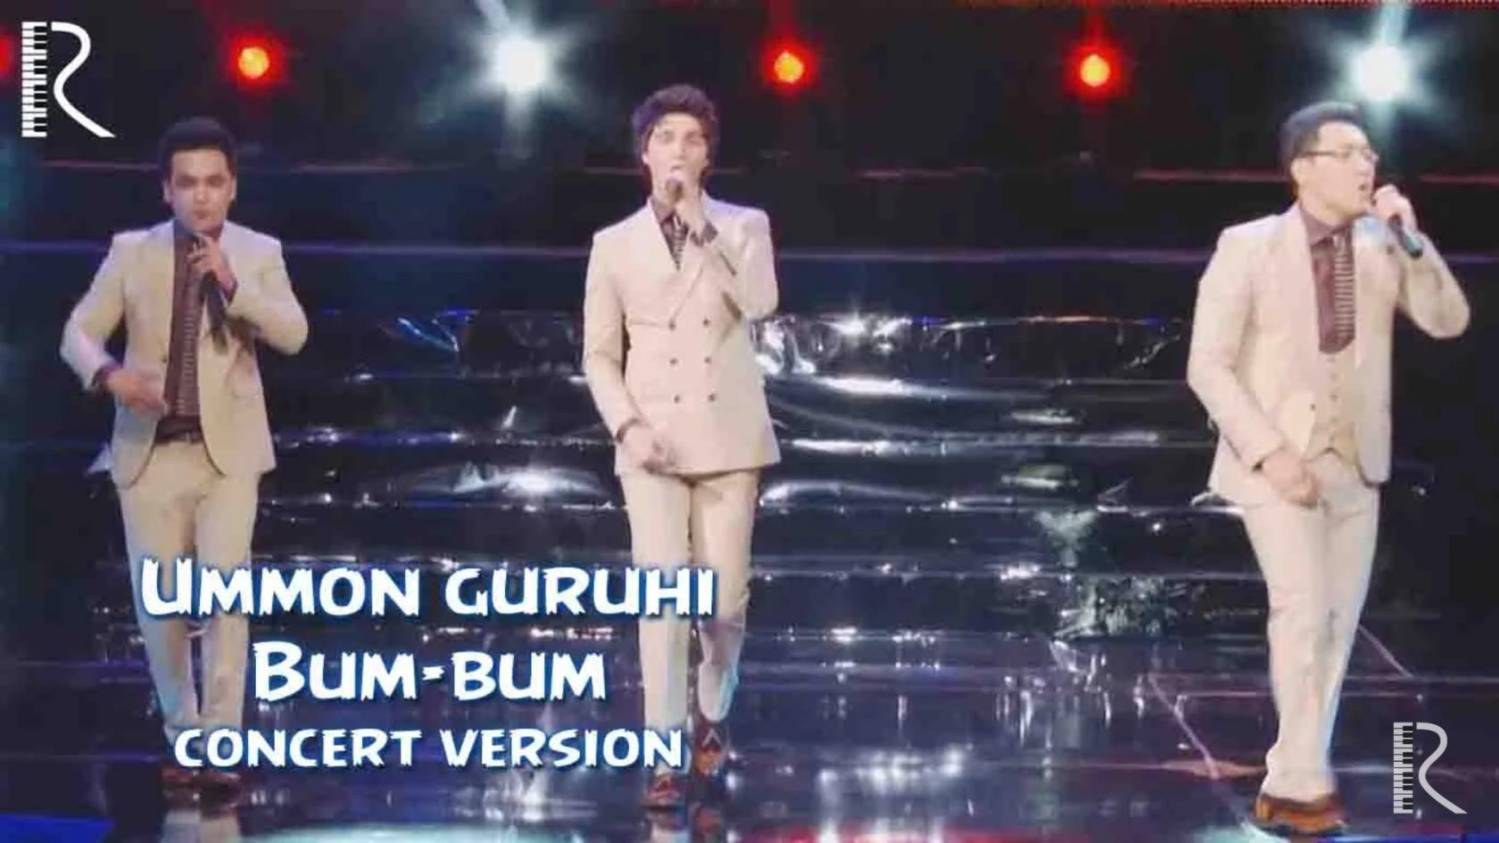 Ummon guruhi - Bum-bum (concert version) смотреть онлайн